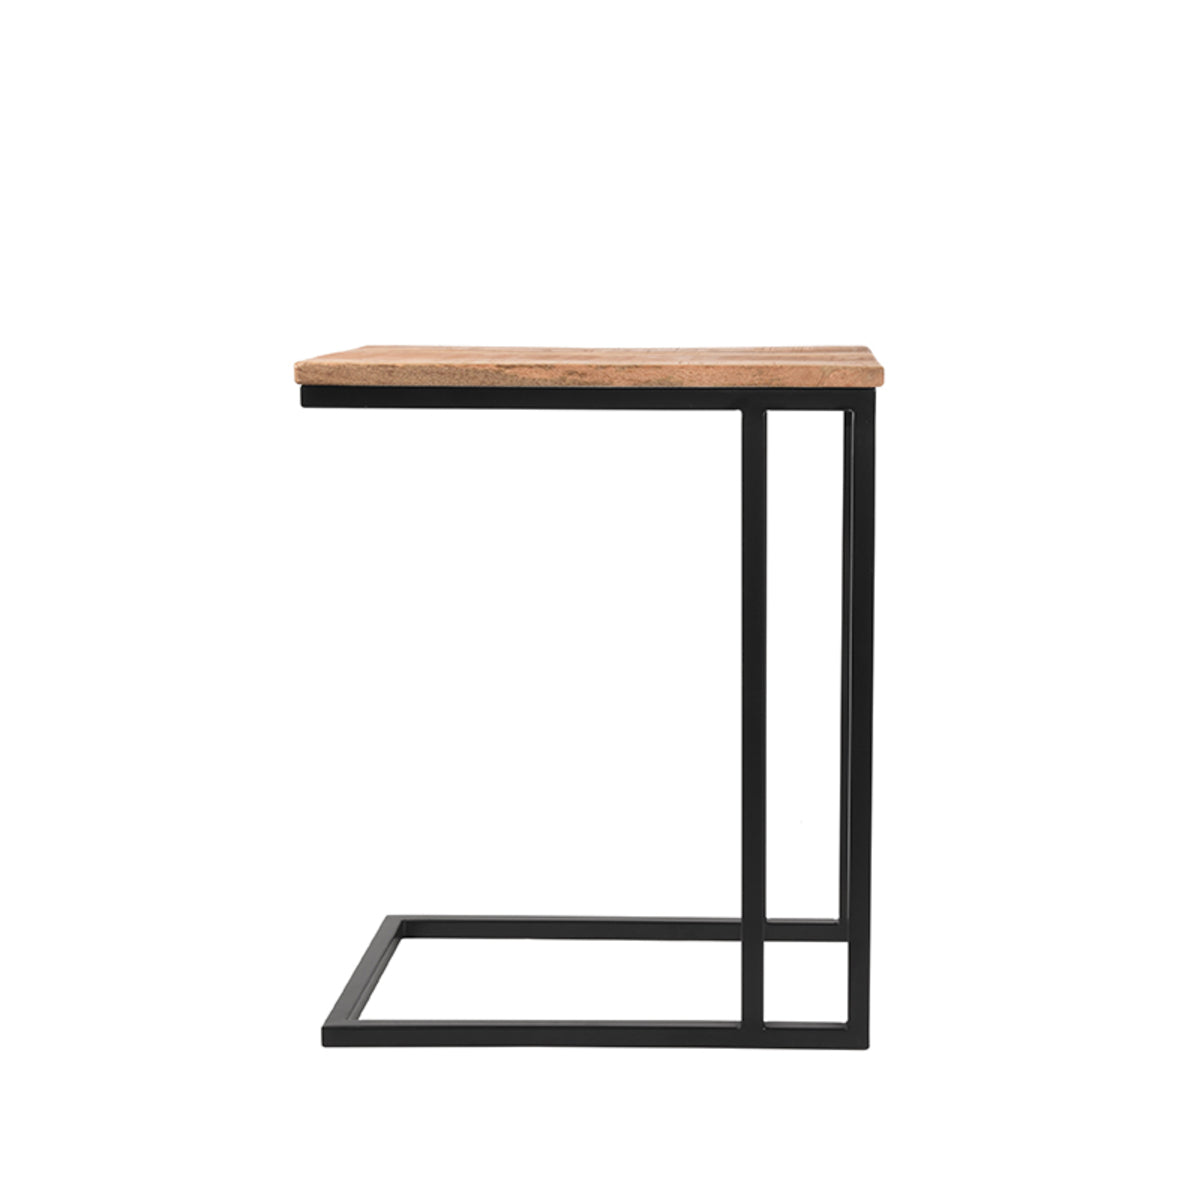 Nancy's Side Table Move - Table d'ordinateur portable - Tables d'appoint - Industriel - Bois - Brut - 35 x 50 x 61 cm